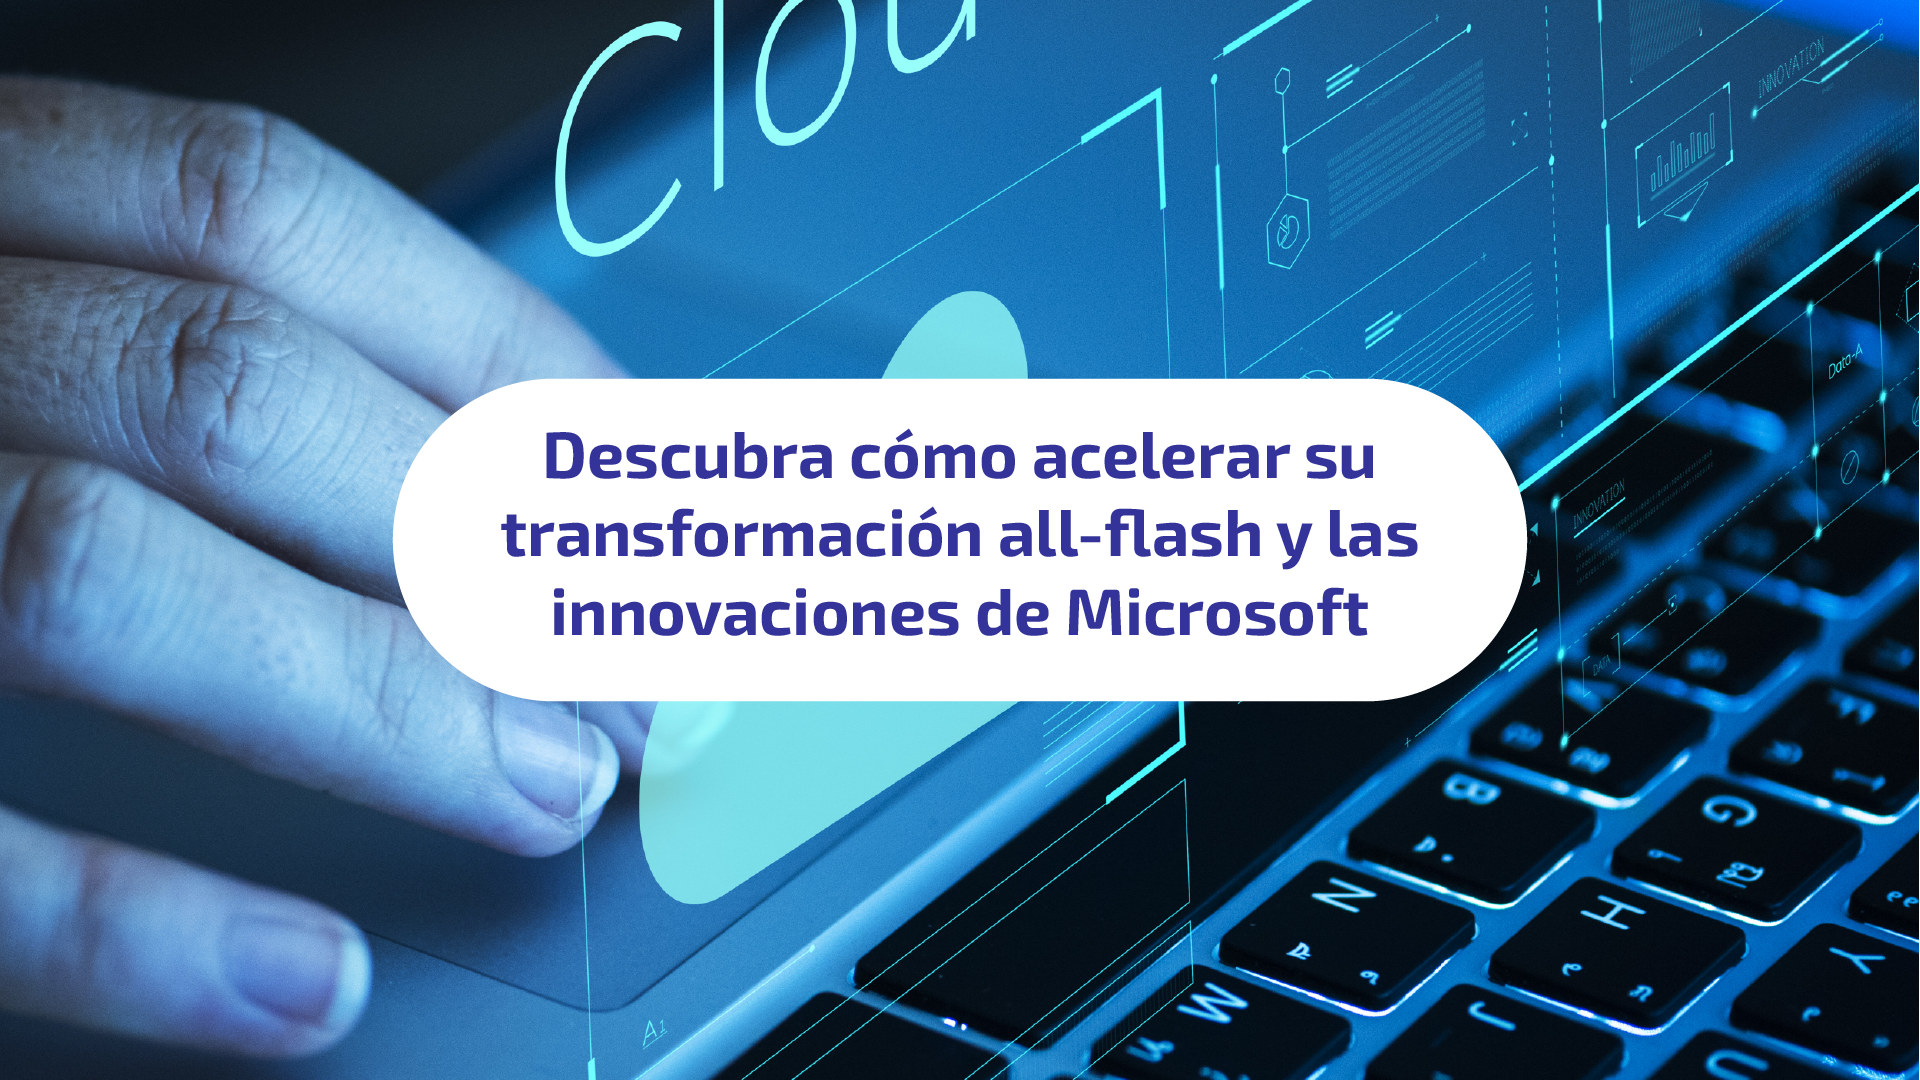 Acelerar su transformación all-flash y las innovaciones de Microsoft